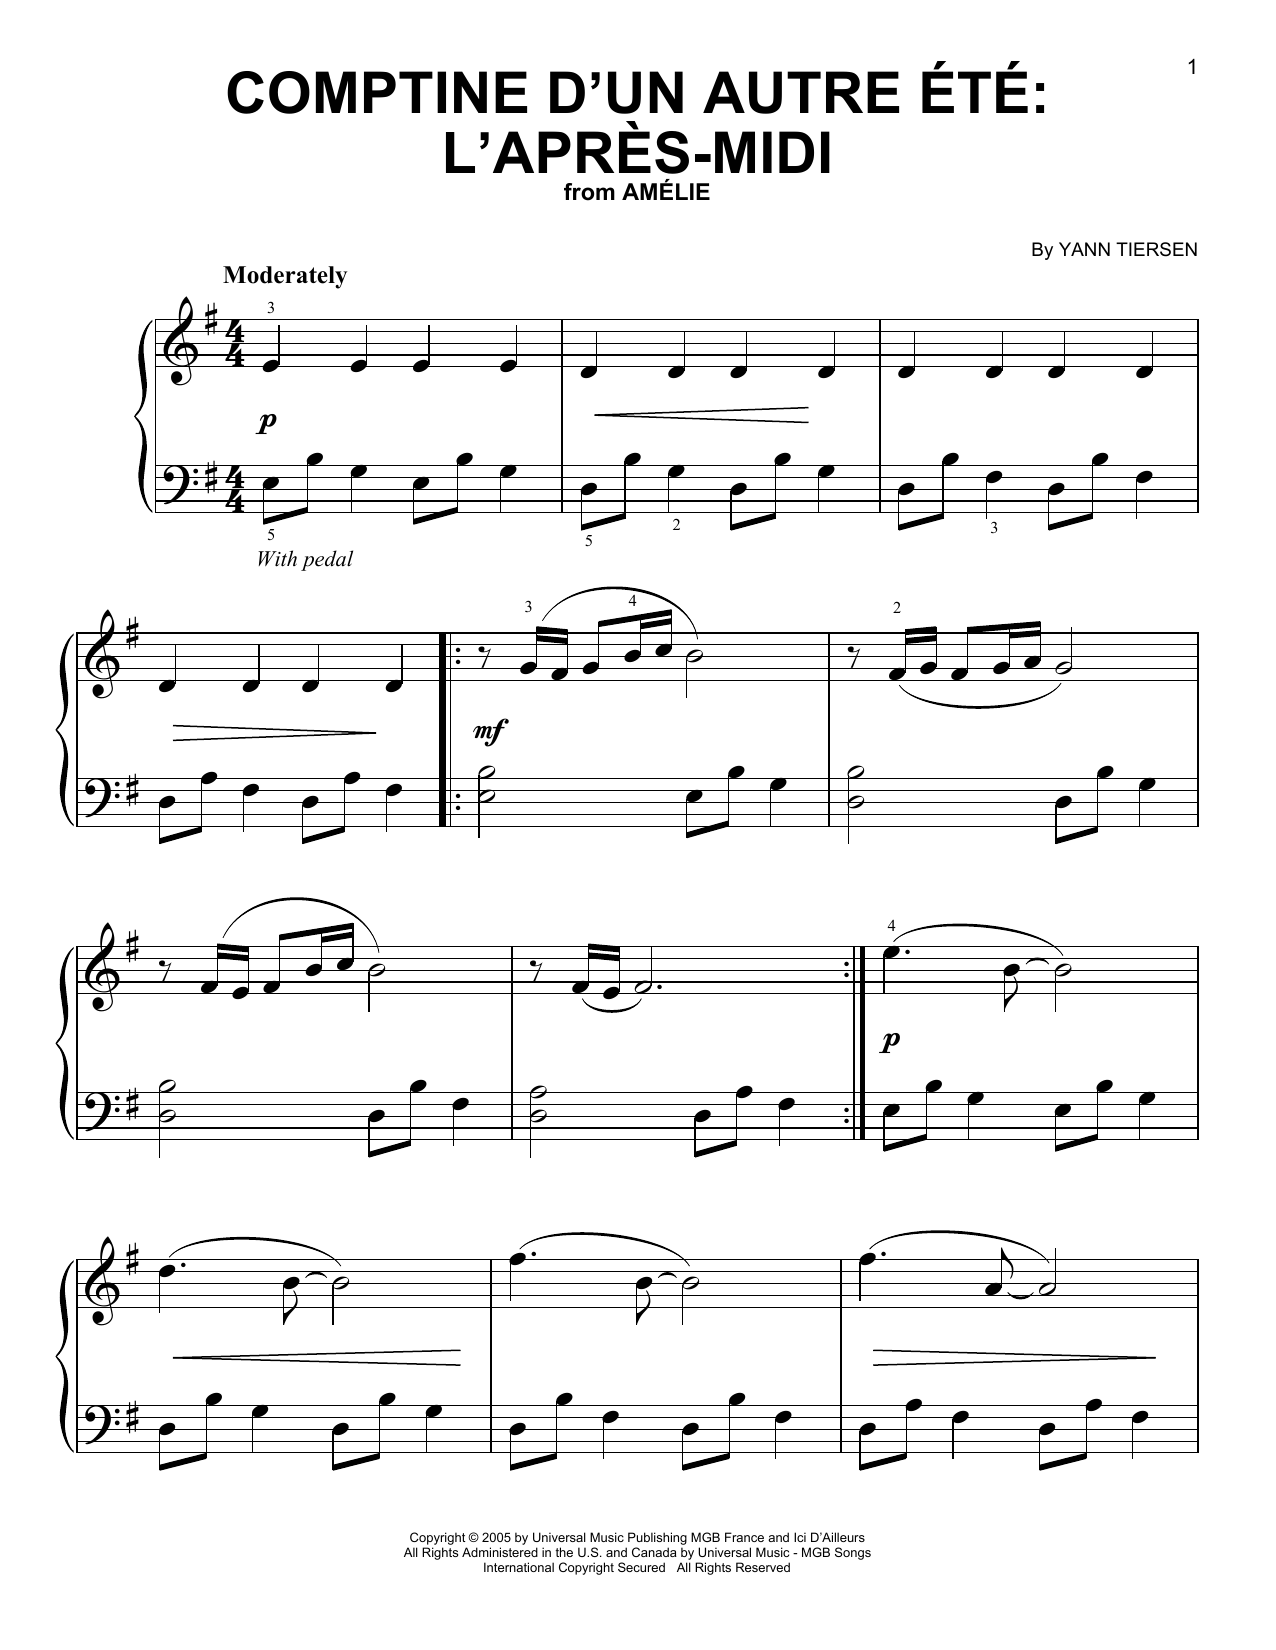 Download Yann Tiersen Comptine d'un autre été: L'après-midi Sheet Music and learn how to play Easy Piano PDF digital score in minutes